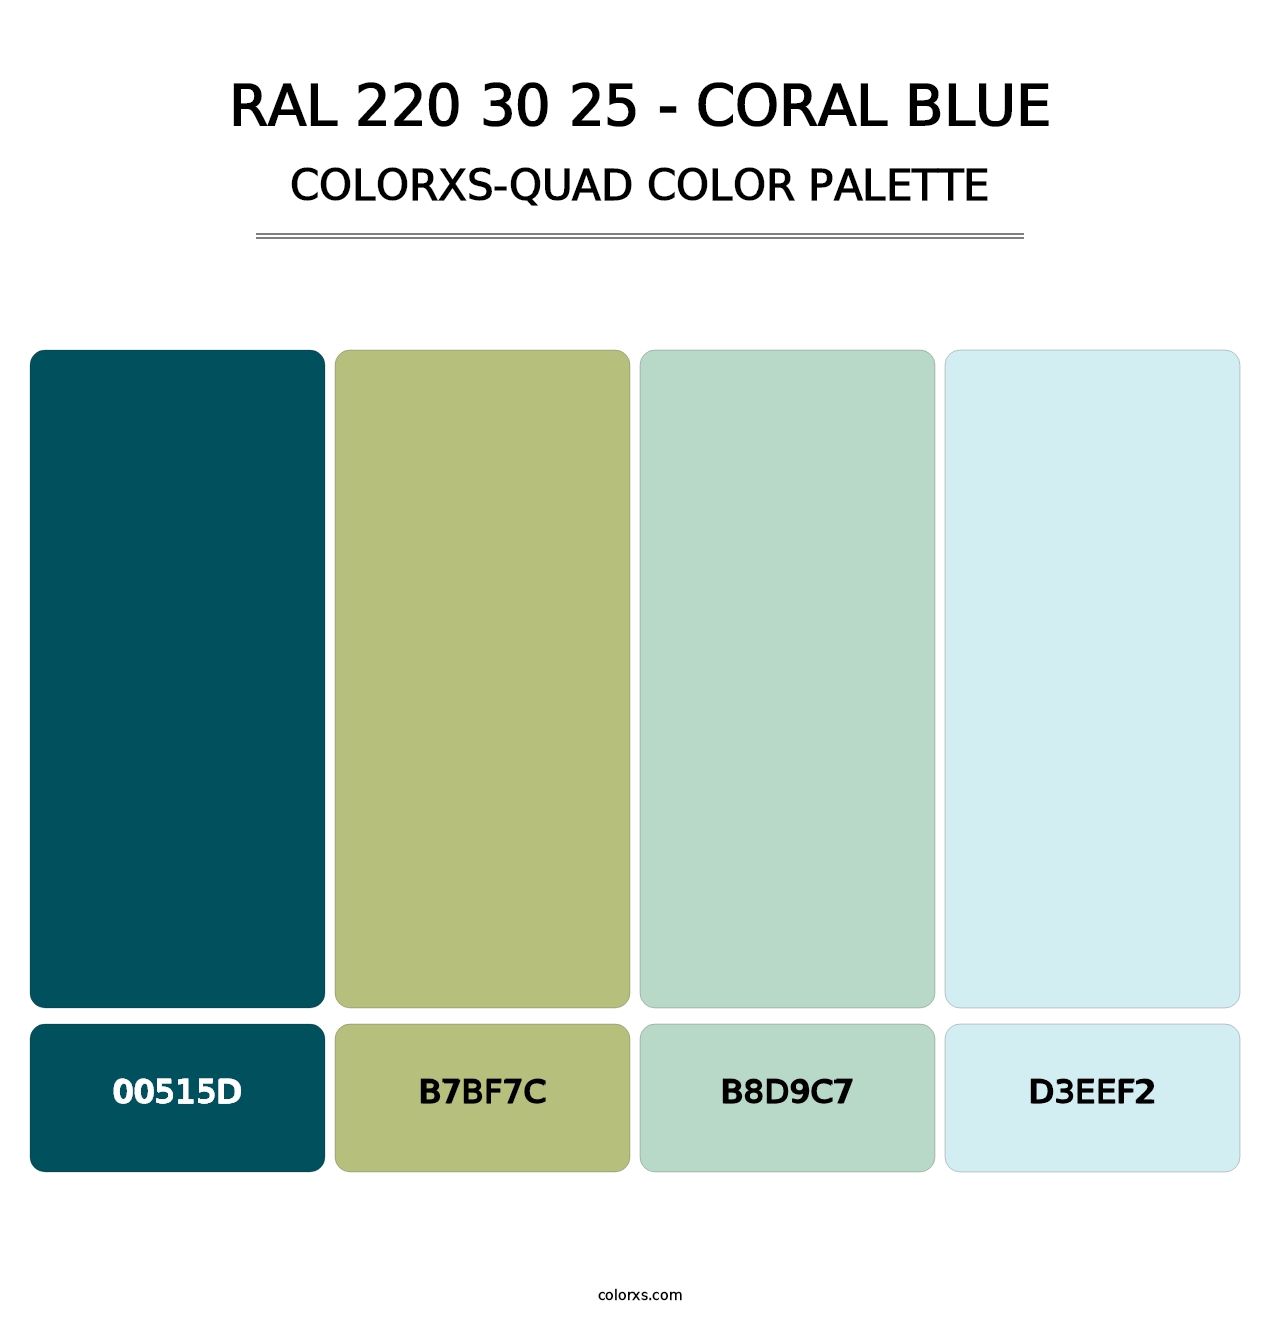 RAL 220 30 25 - Coral Blue - Colorxs Quad Palette